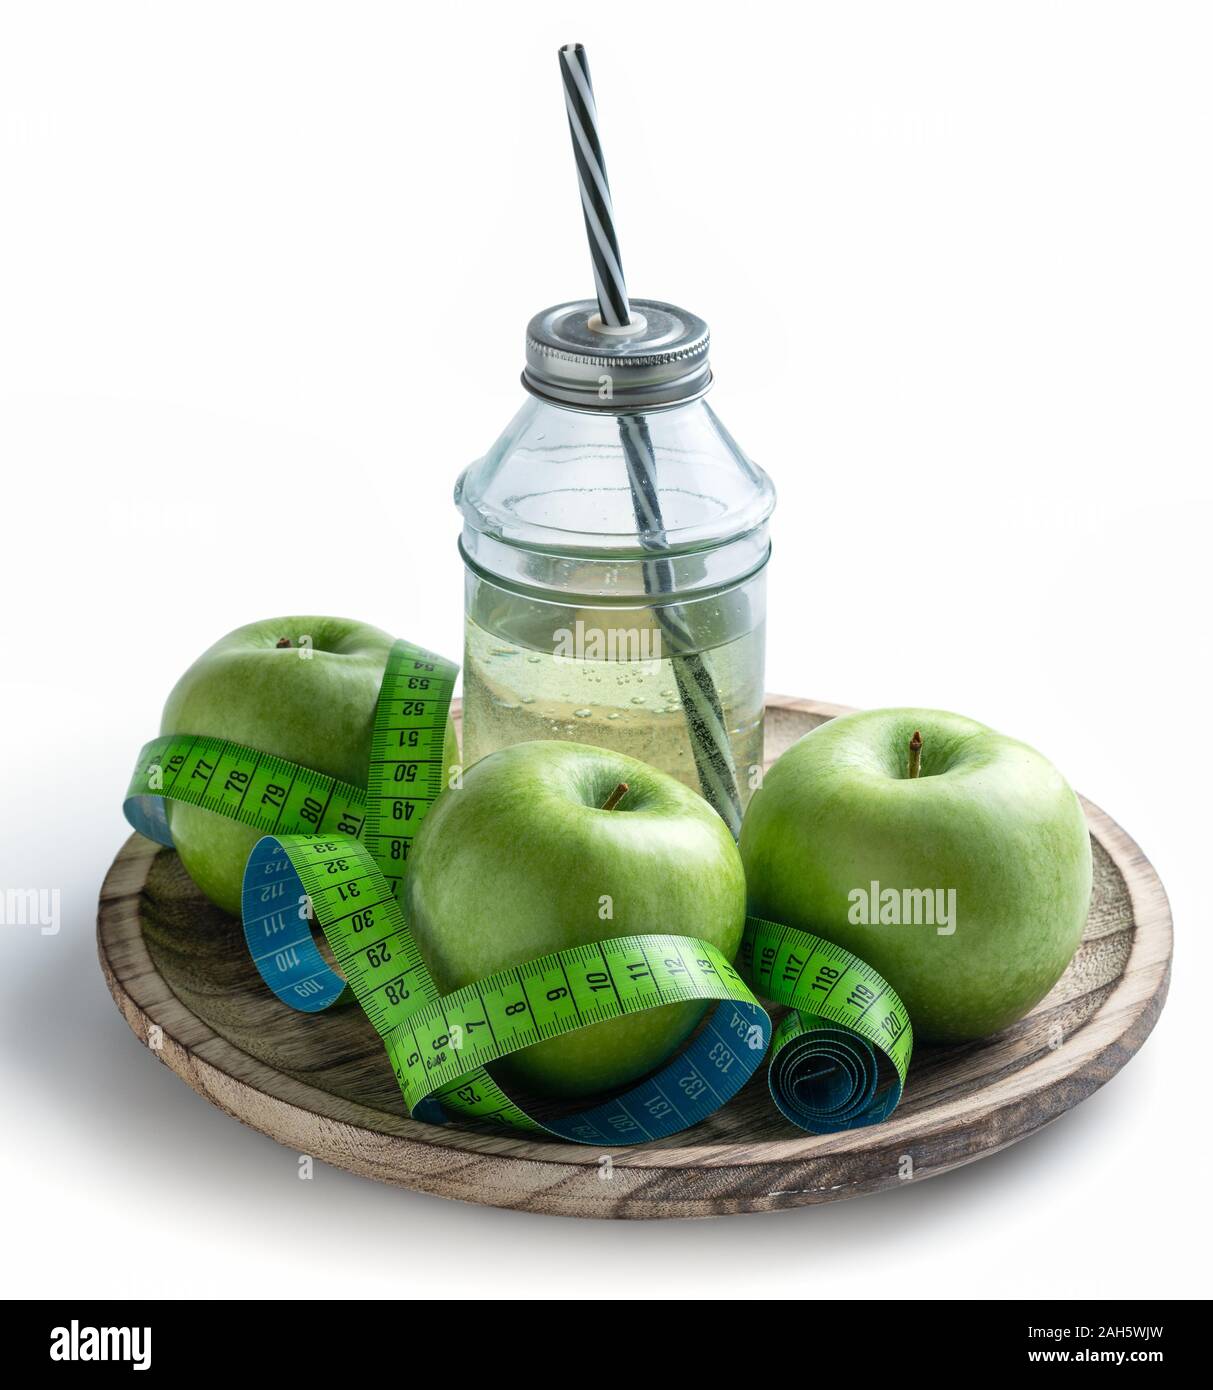 Las manzanas verdes y jugo de manzana con cinta de medición para el control de peso en la dieta. Contiene trazado de recorte para usar fondo transparente Foto de stock